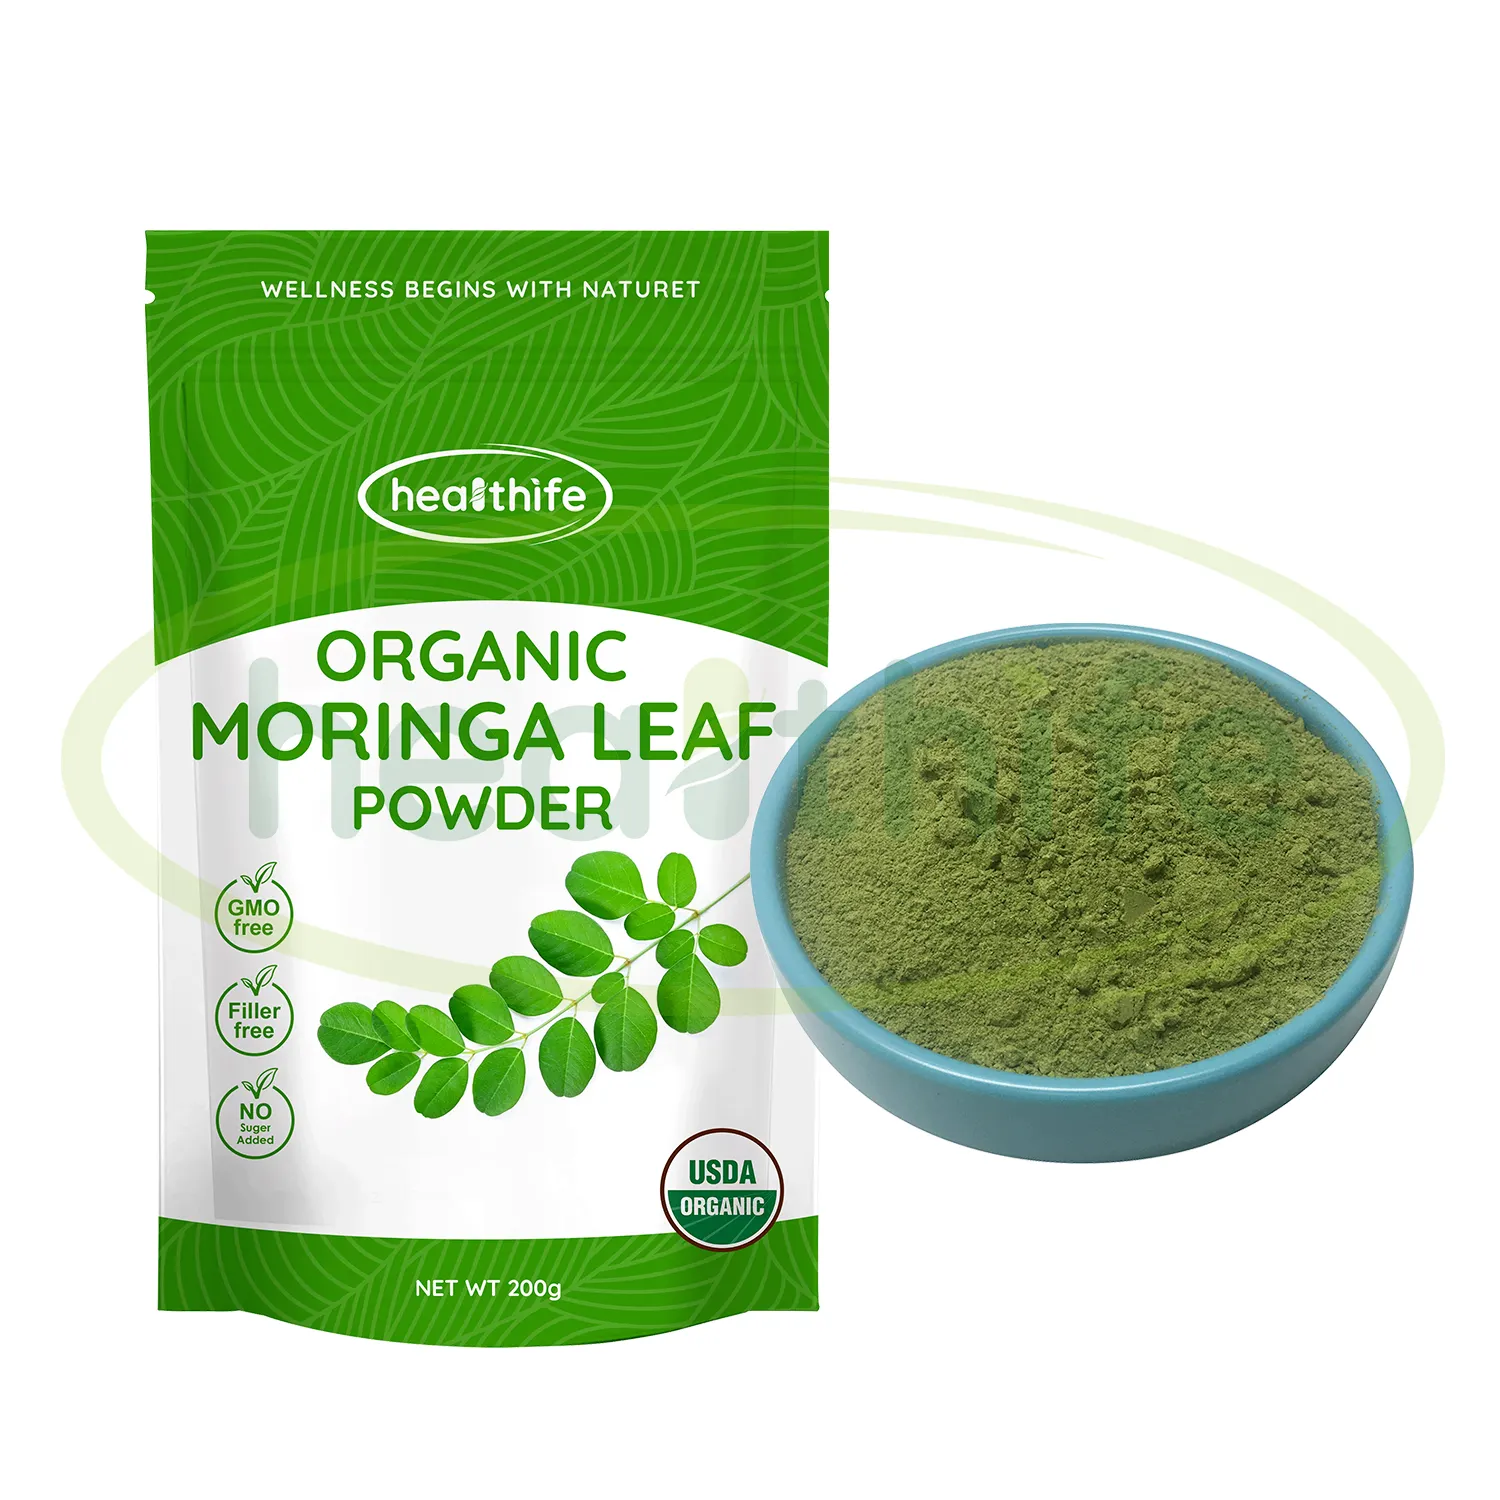 Healthife Moringa foglie estratto, polvere di foglie di Moringa organica